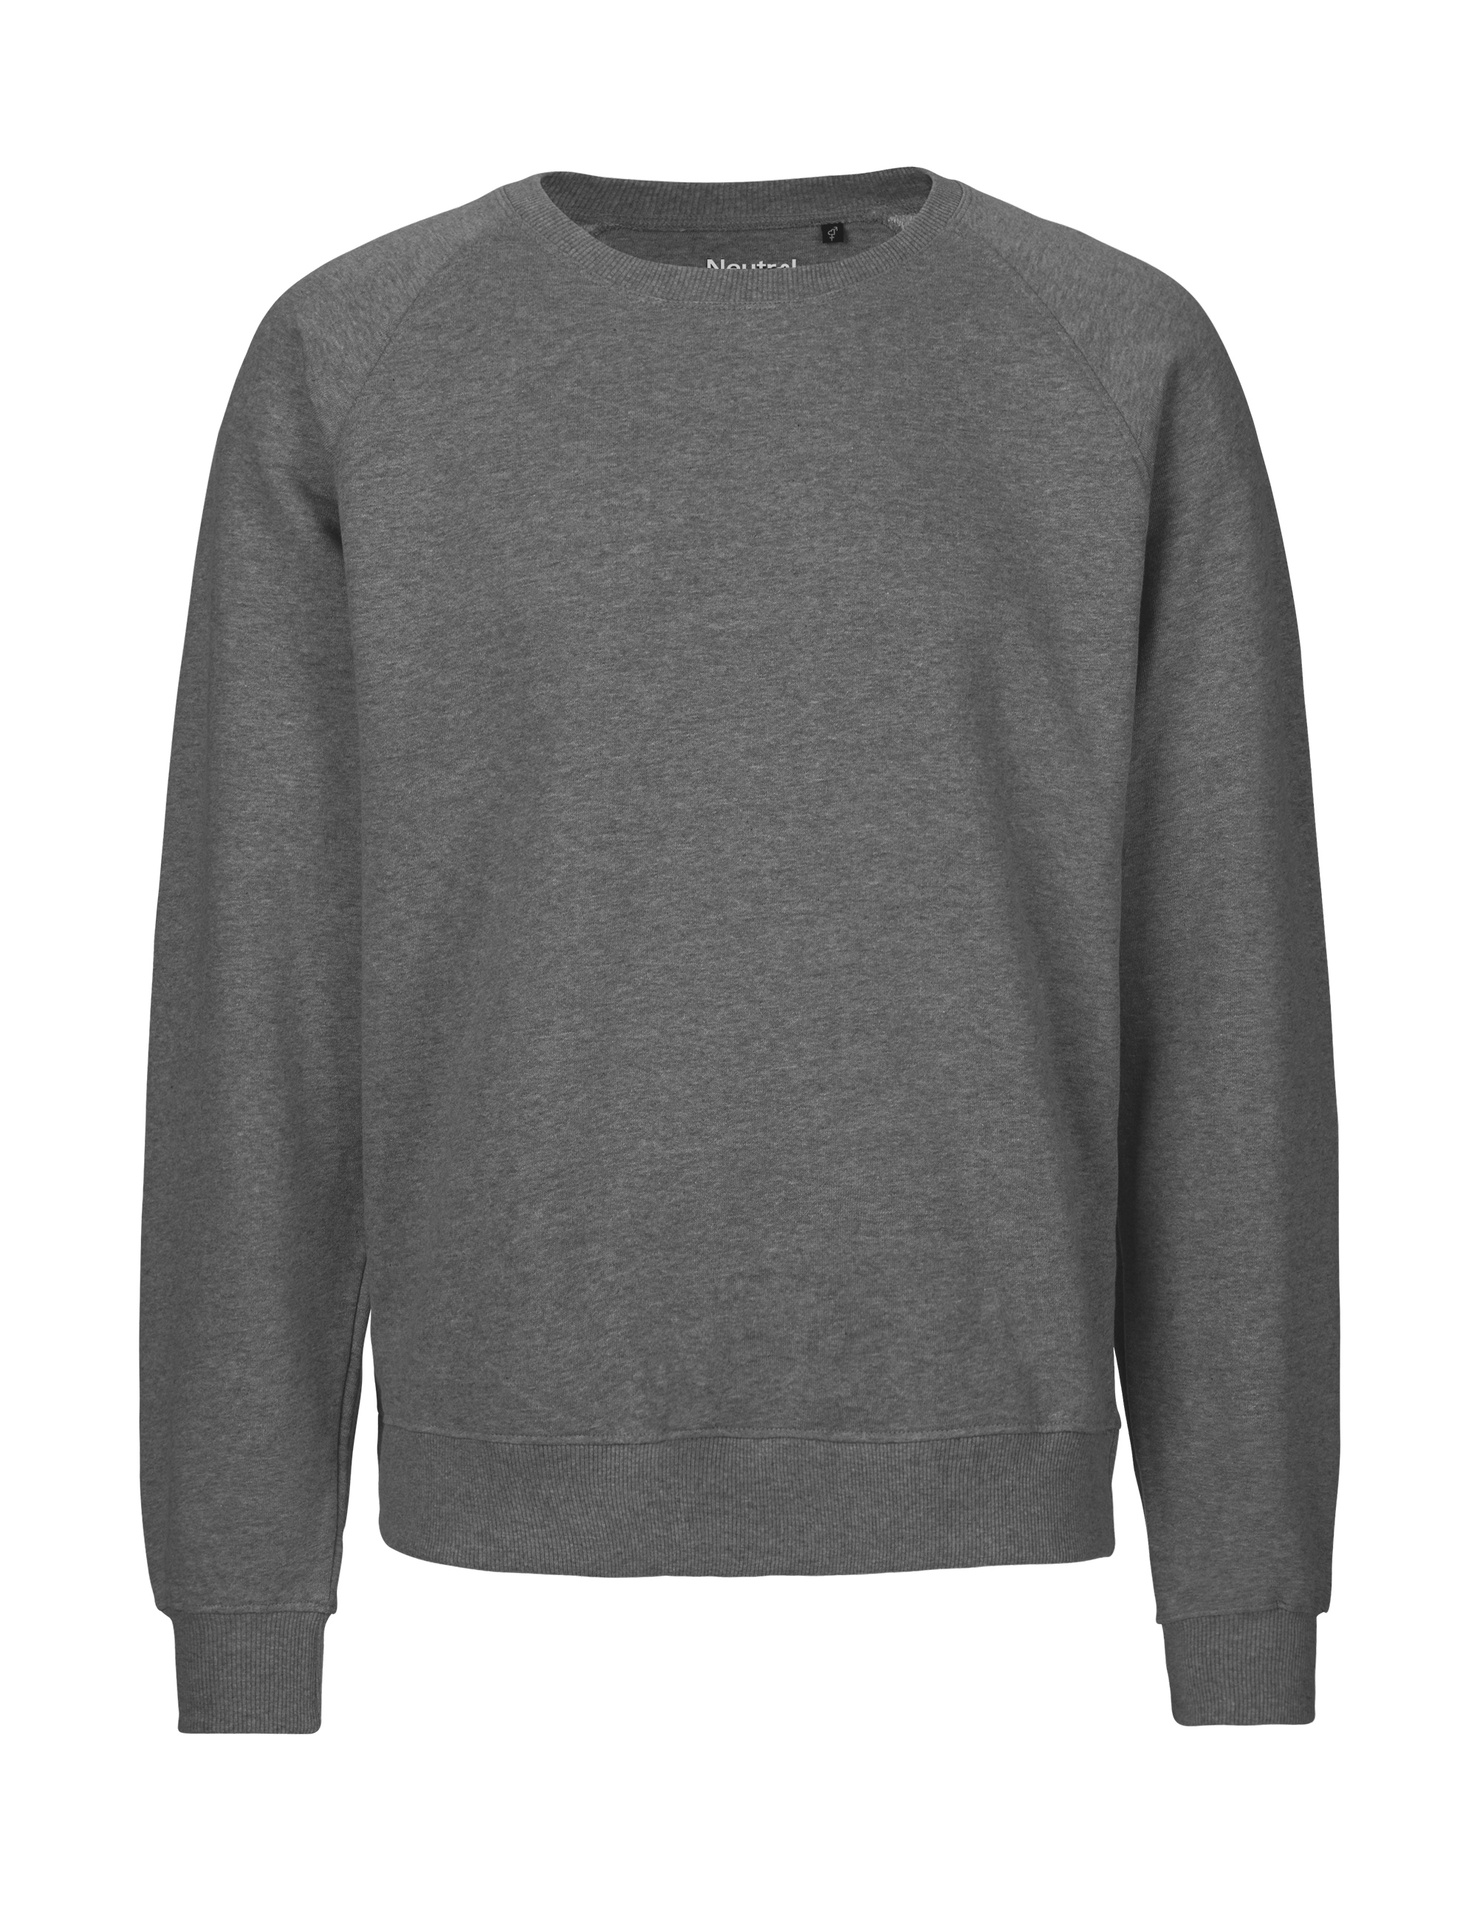 [PR/02698] Unisex Sweatshirt (Dark Heather 08, S)